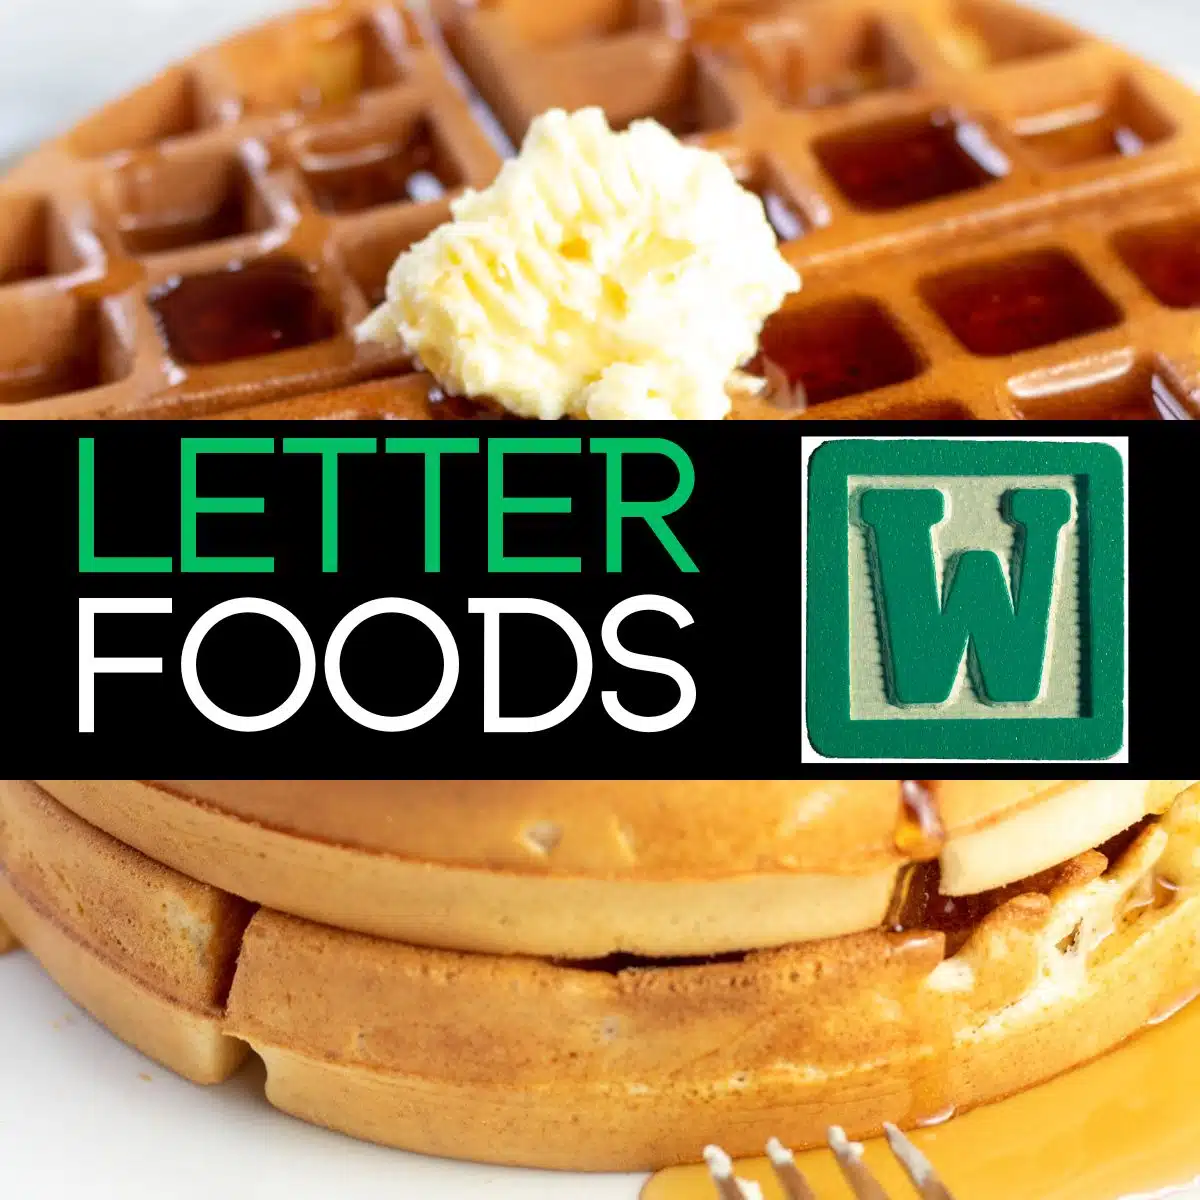 Квадратно изображение с текст за храни, започващи с буквата w, показващи вафли на снимка.